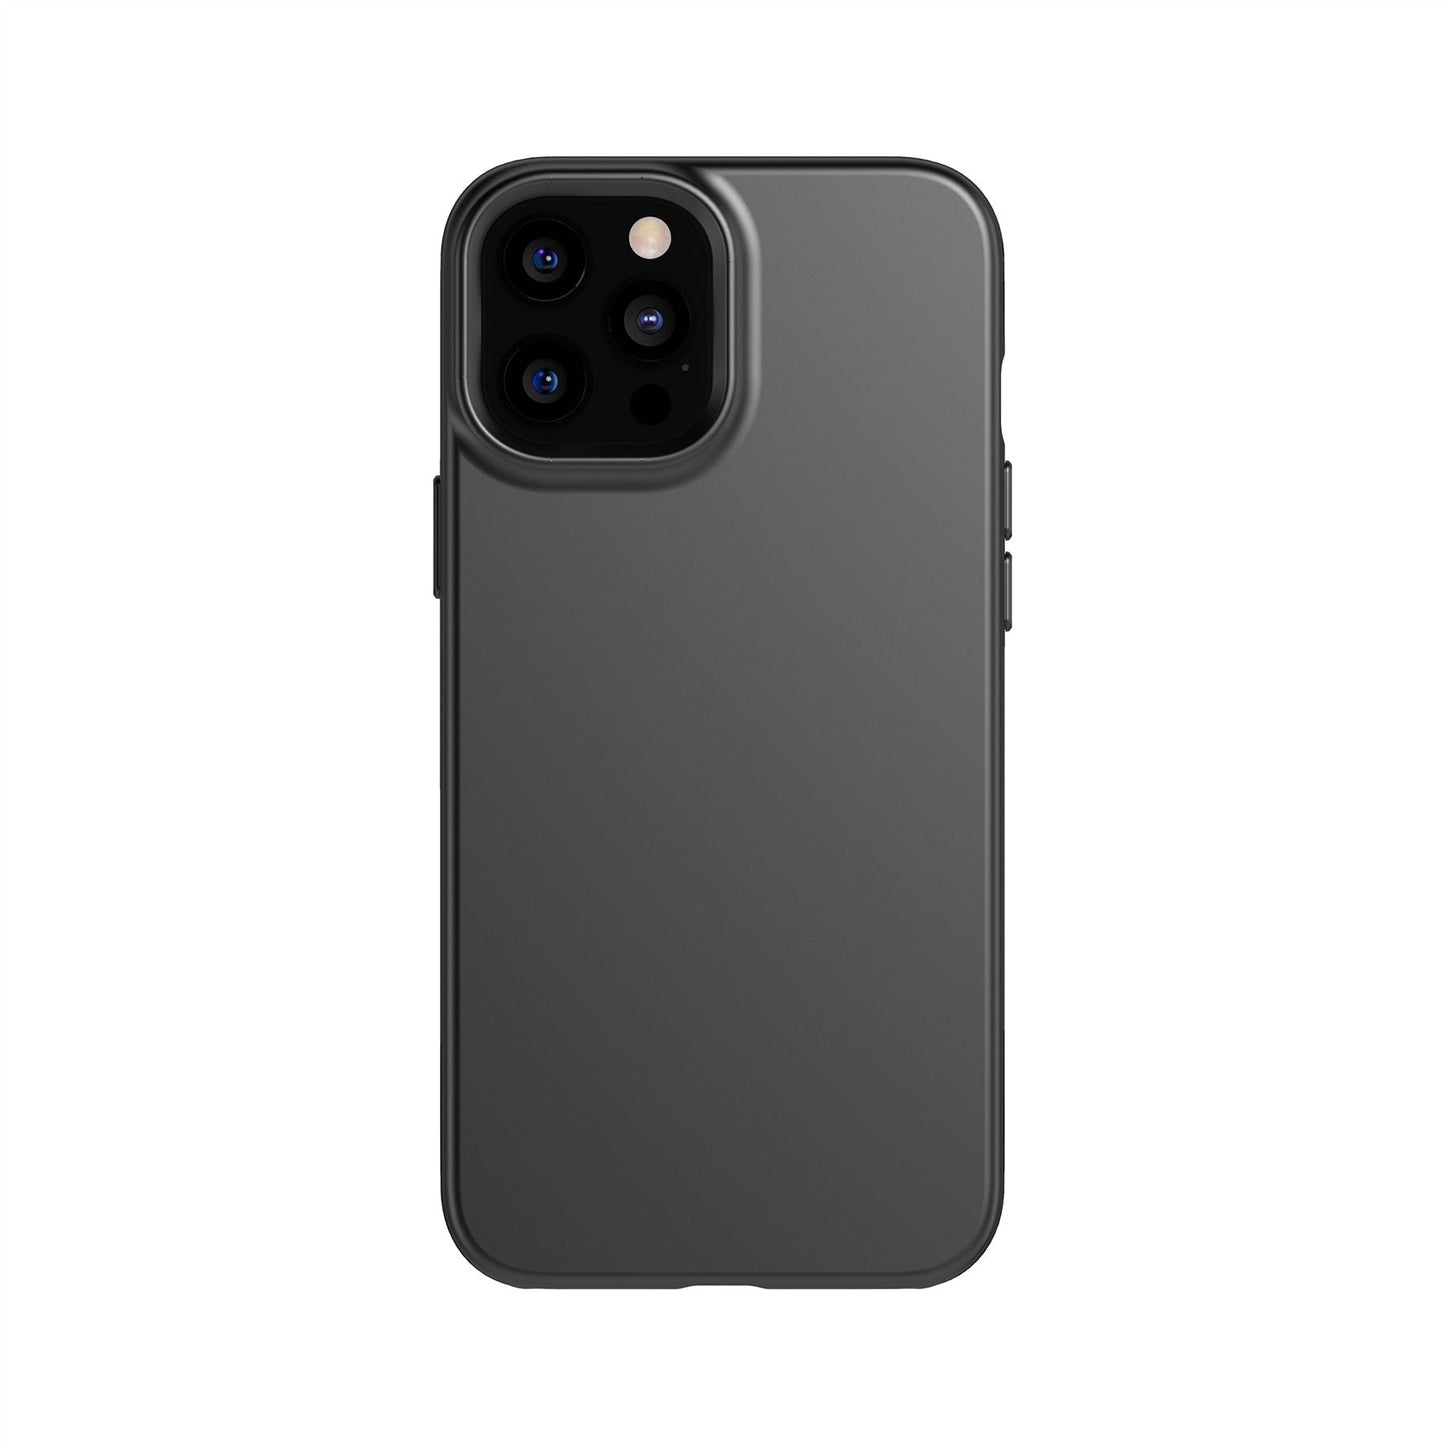 Evo Slim Black iPhone 12 Pro Max Case